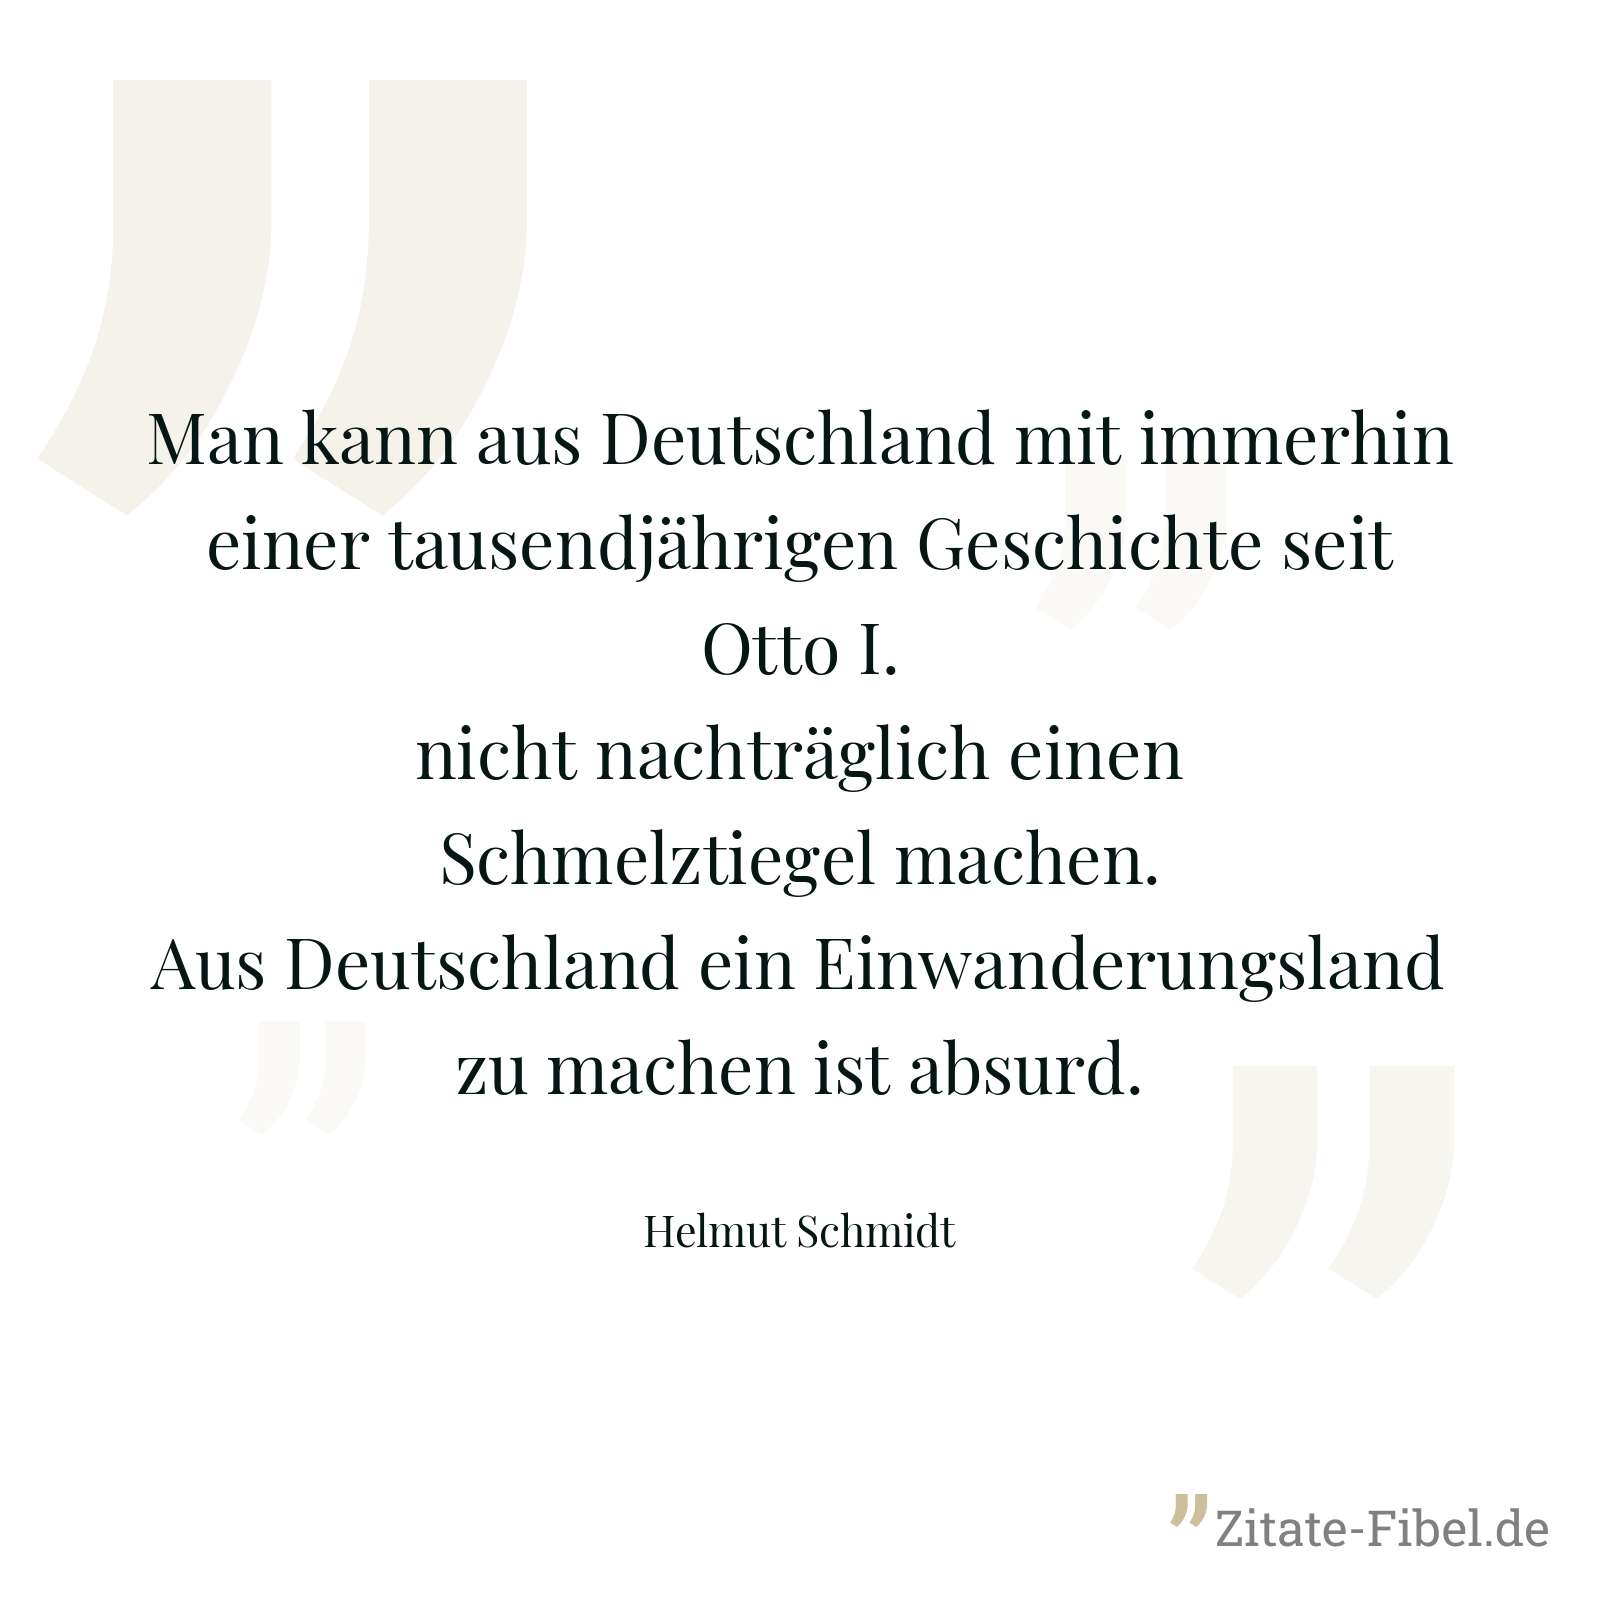 Man kann aus Deutschland mit immerhin einer tausendjährigen Geschichte seit Otto I. nicht nachträglich einen Schmelztiegel machen. Aus Deutschland ein Einwanderungsland zu machen ist absurd. - Helmut Schmidt